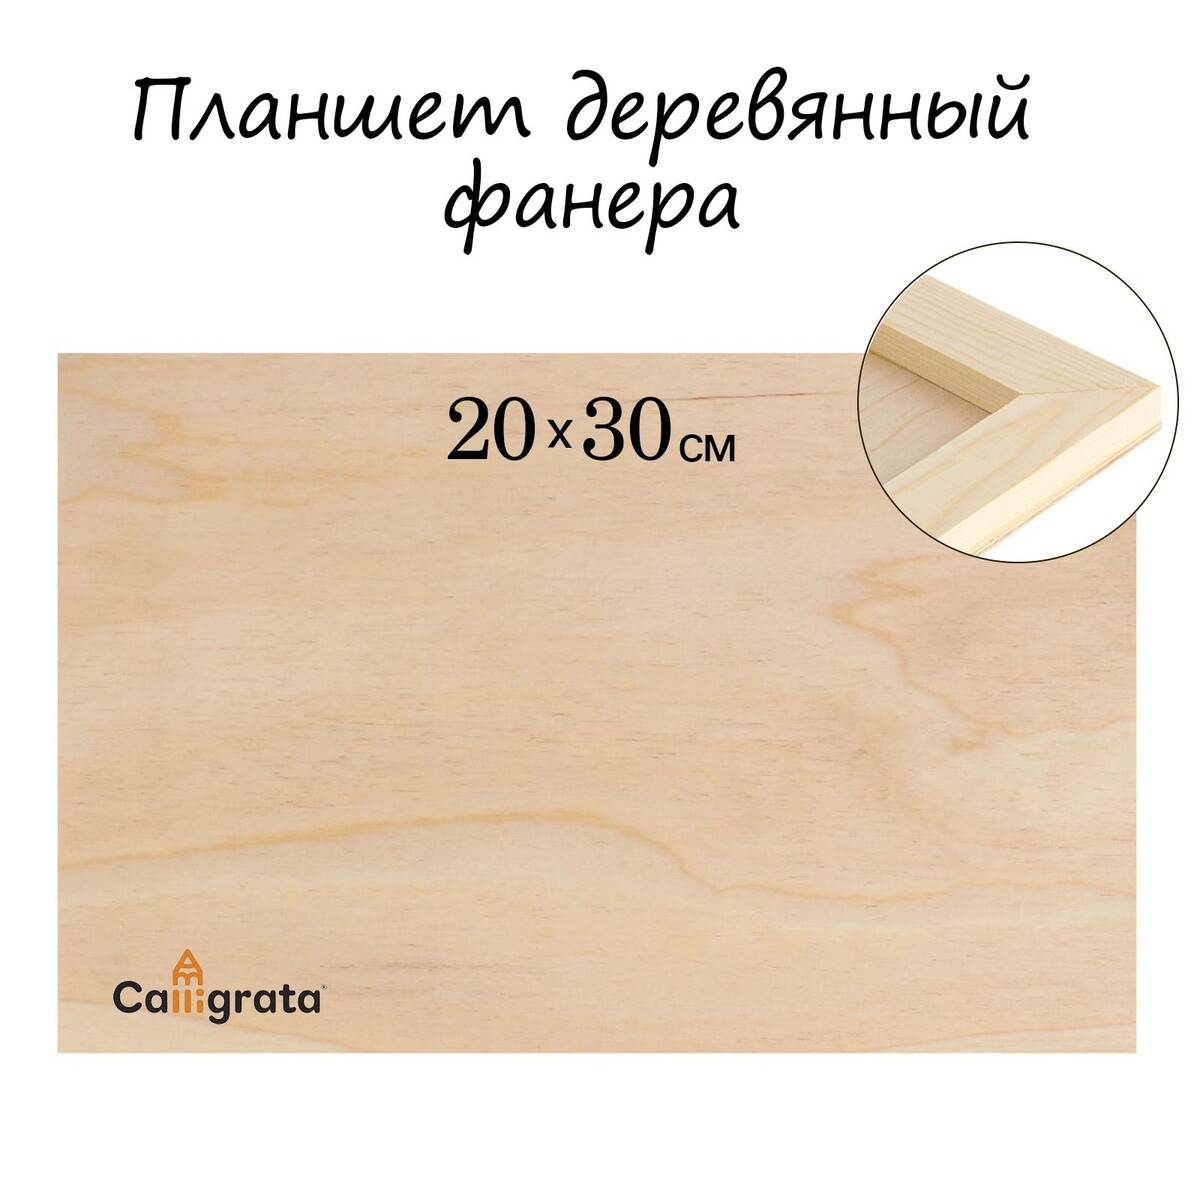 Планшет деревянный 20 х 30 х 2 см, фанера планшет деревянный с врезанной фанерой 50 х 50 х 3 5 см глубина 0 5 см сосна